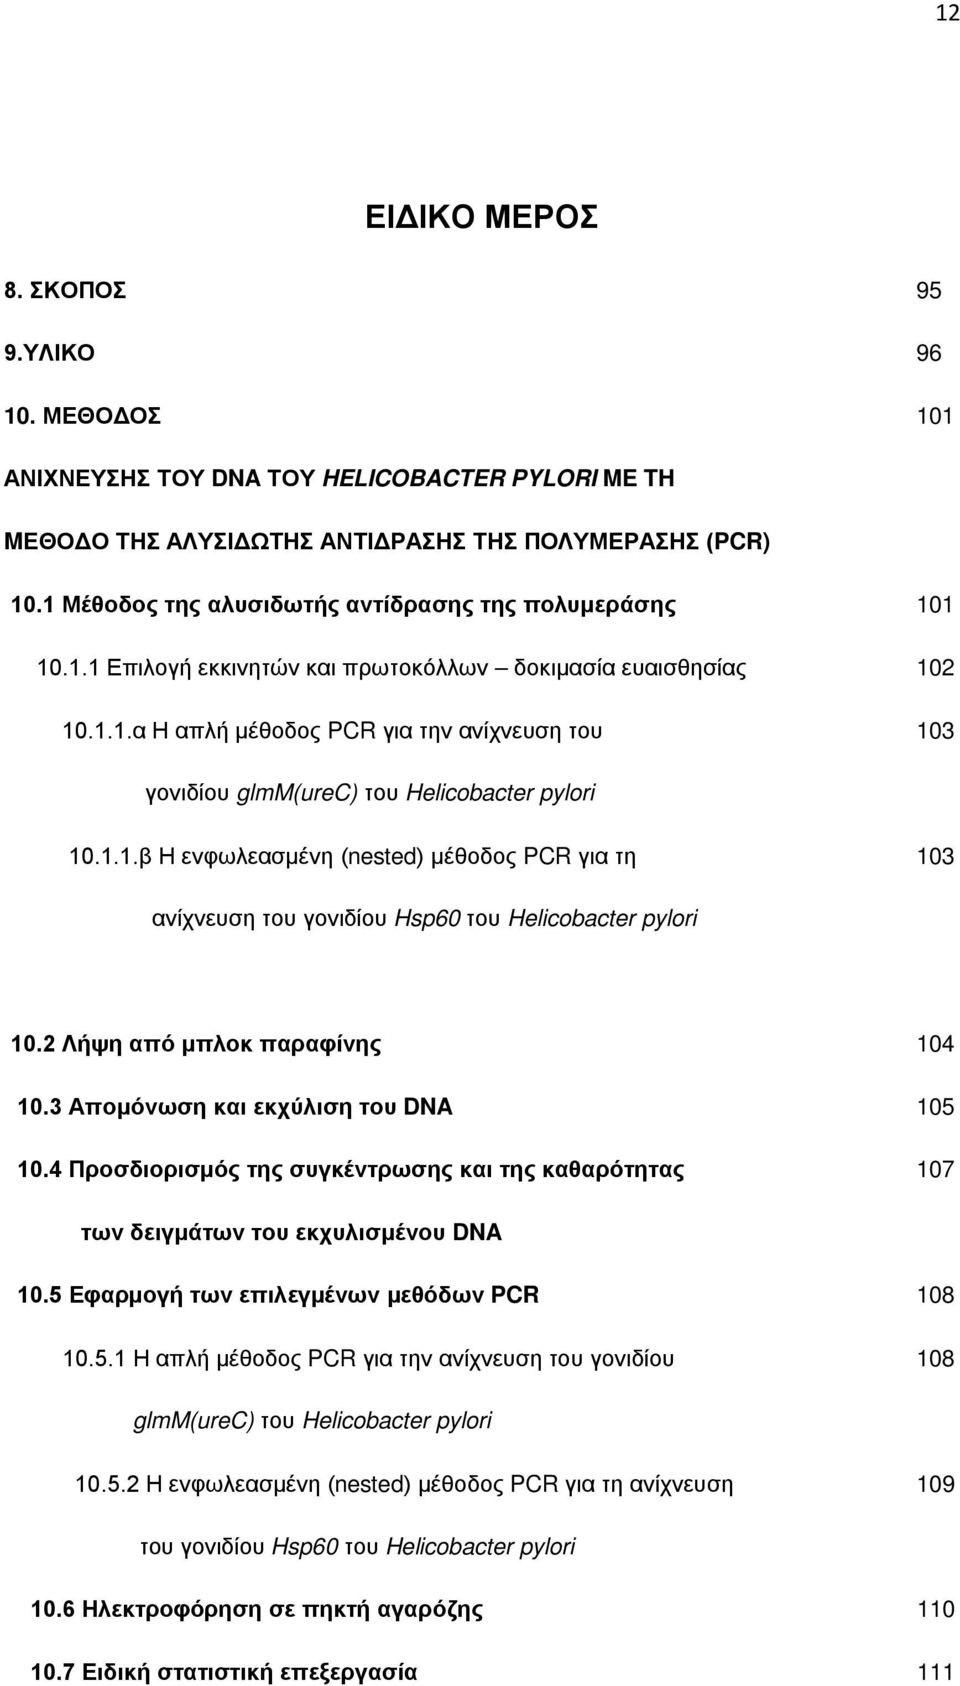 1.1.β Η ενφωλεασμένη (nested) μέθοδος PCR για τη 103 ανίχνευση του γονιδίου Hsp60 του Helicobacter pylori 10.2 Λήψη από μπλοκ παραφίνης 104 10.3 Απομόνωση και εκχύλιση του DNA 105 10.